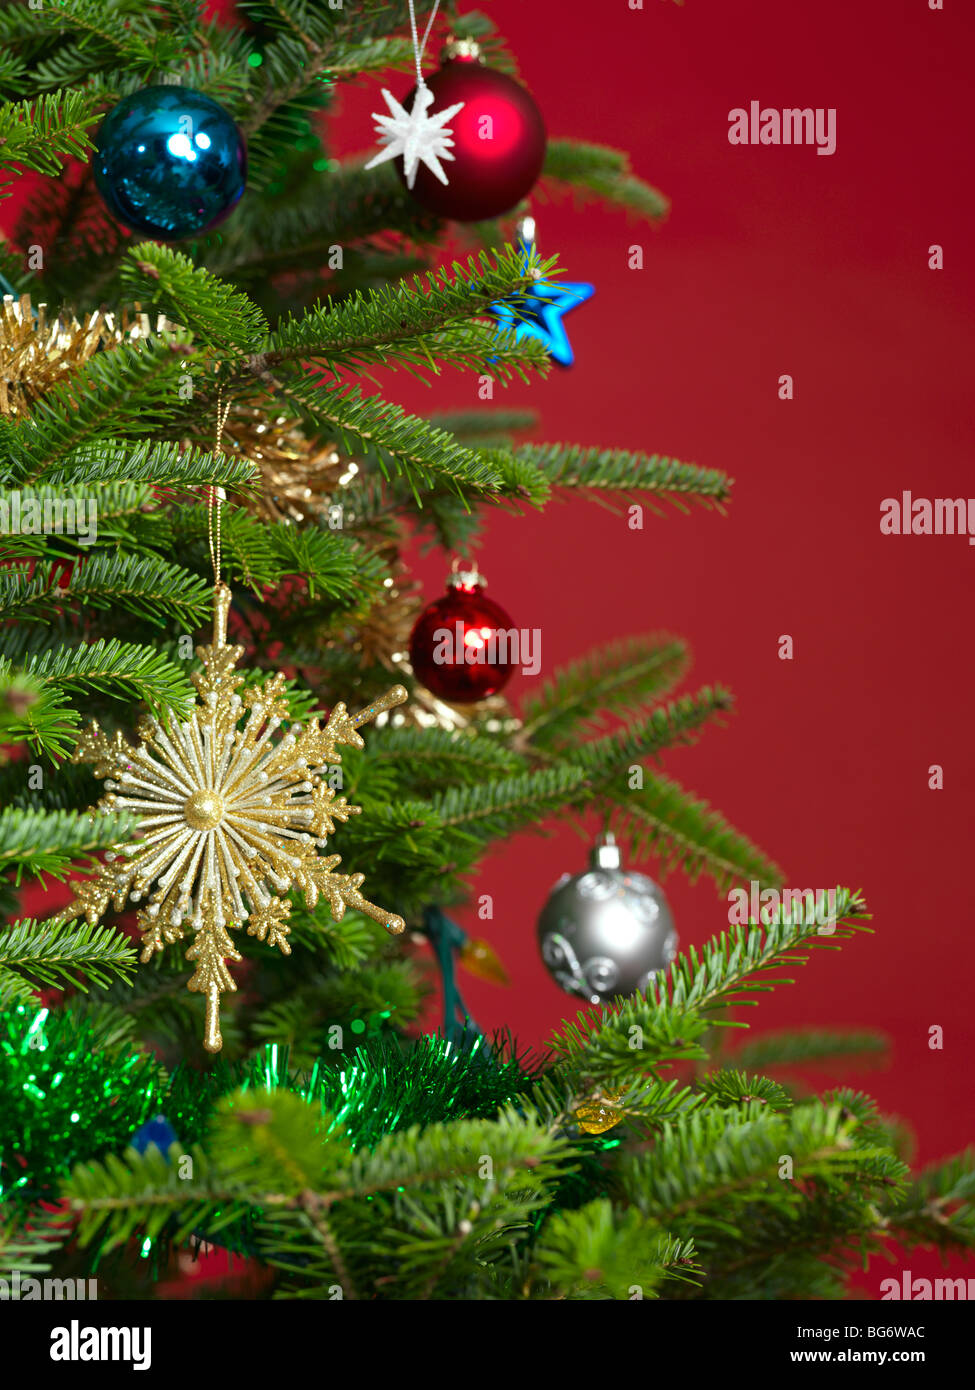 Christmas ornament on a Christmas tree Stock Image